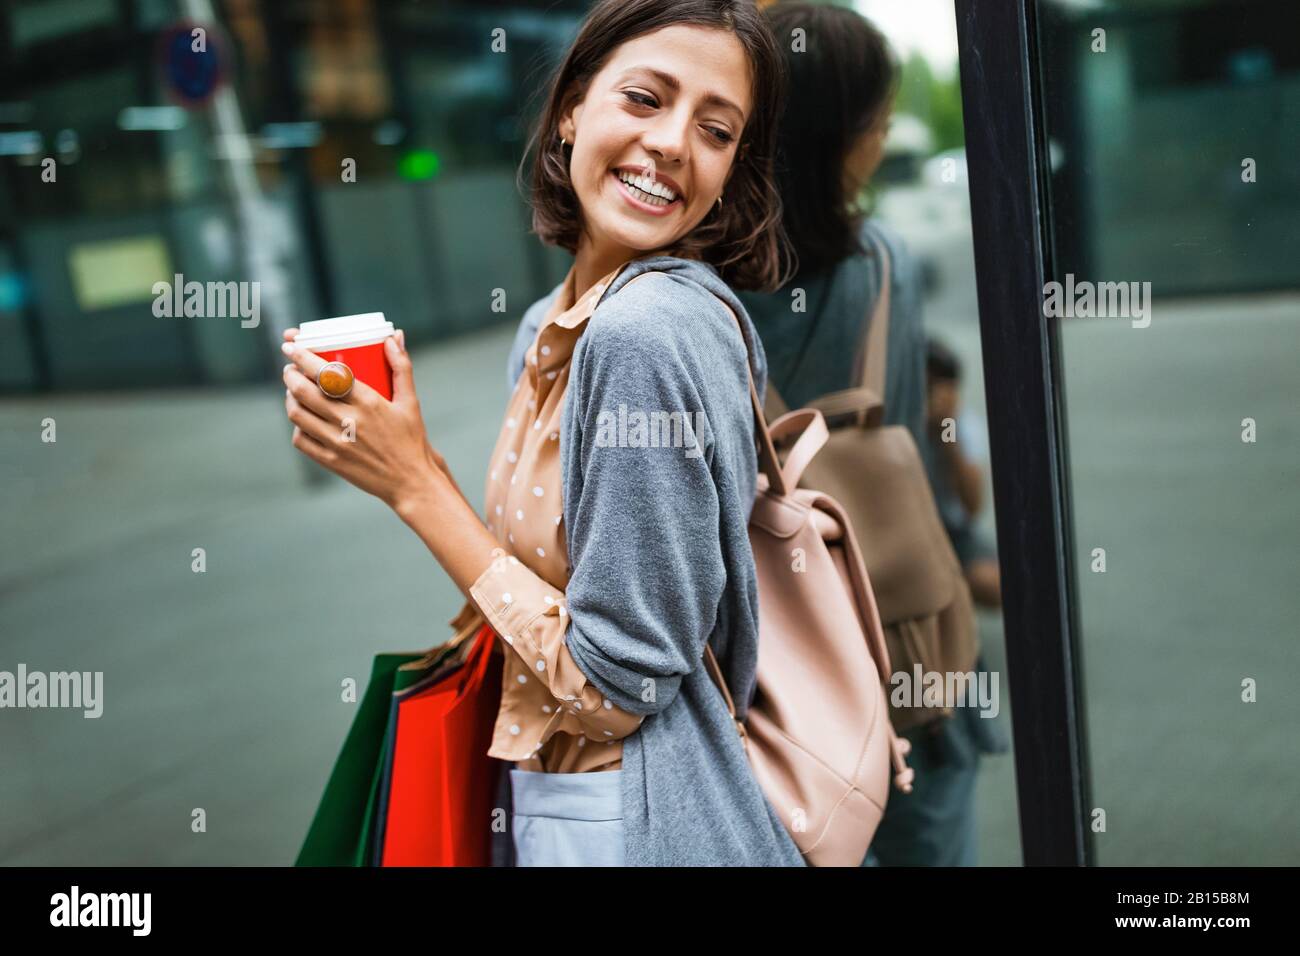 Fröhliche junge Frau, die nach dem Einkaufen in der Stadt Kaffee trinkt und mit Taschen spazieren geht. Stockfoto